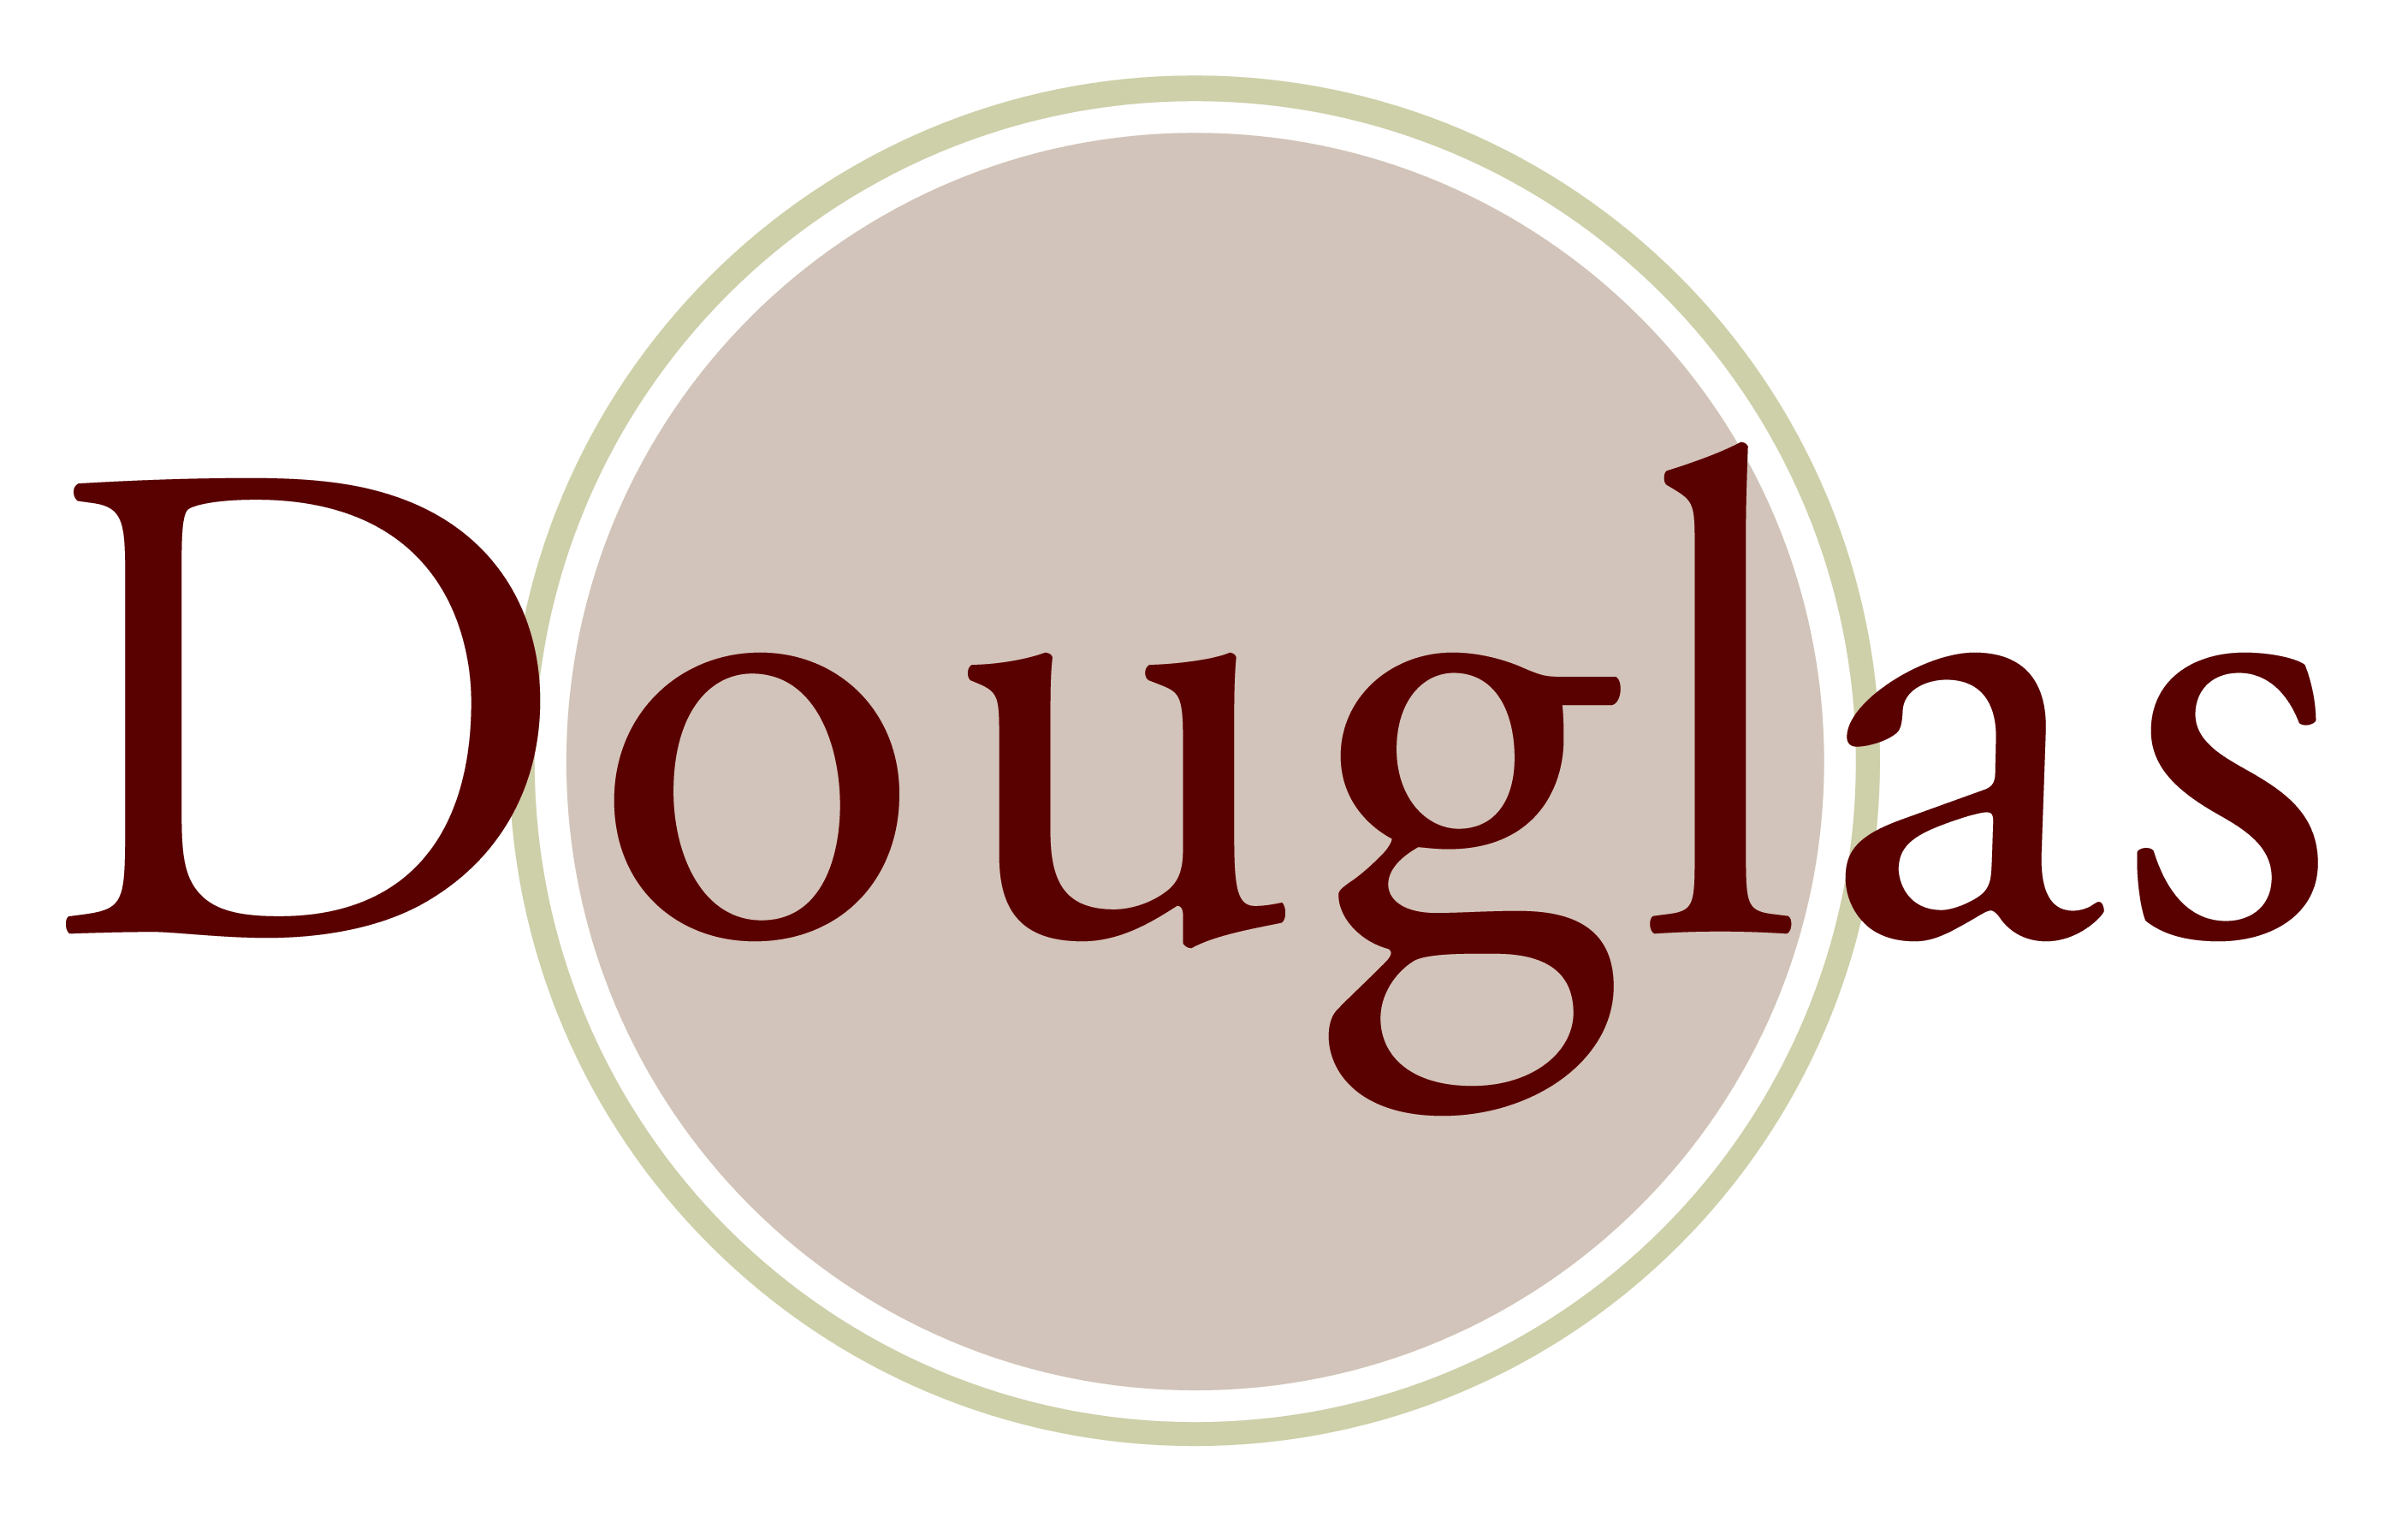 Douglas Logo - Douglas motorcycle logo history and Meaning, bike emblem